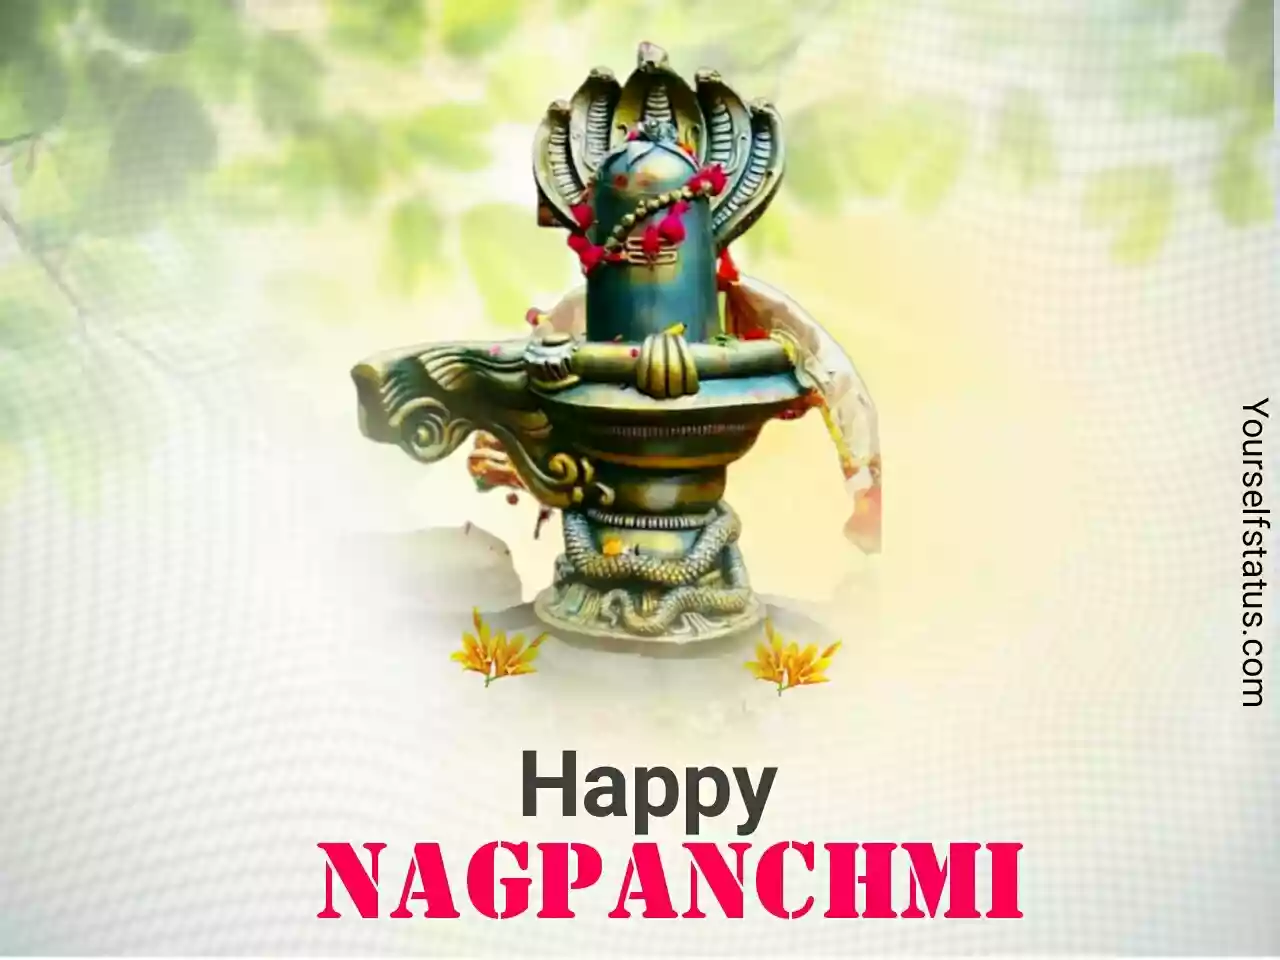 Happy Nag panchami greetings in English